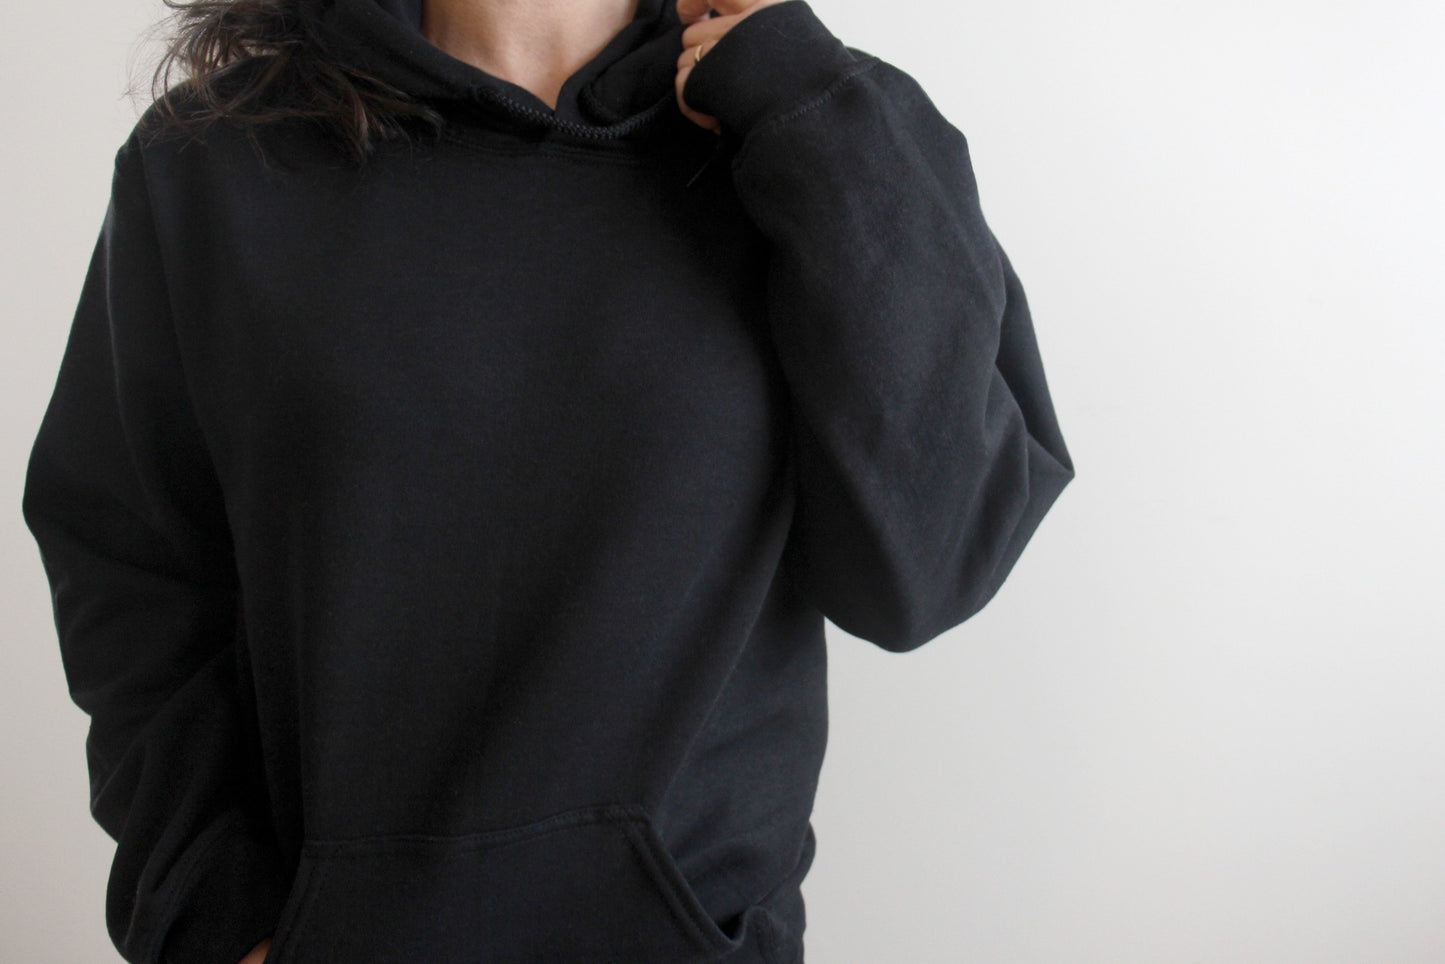 Black Sweatshirt Hooded with Strings